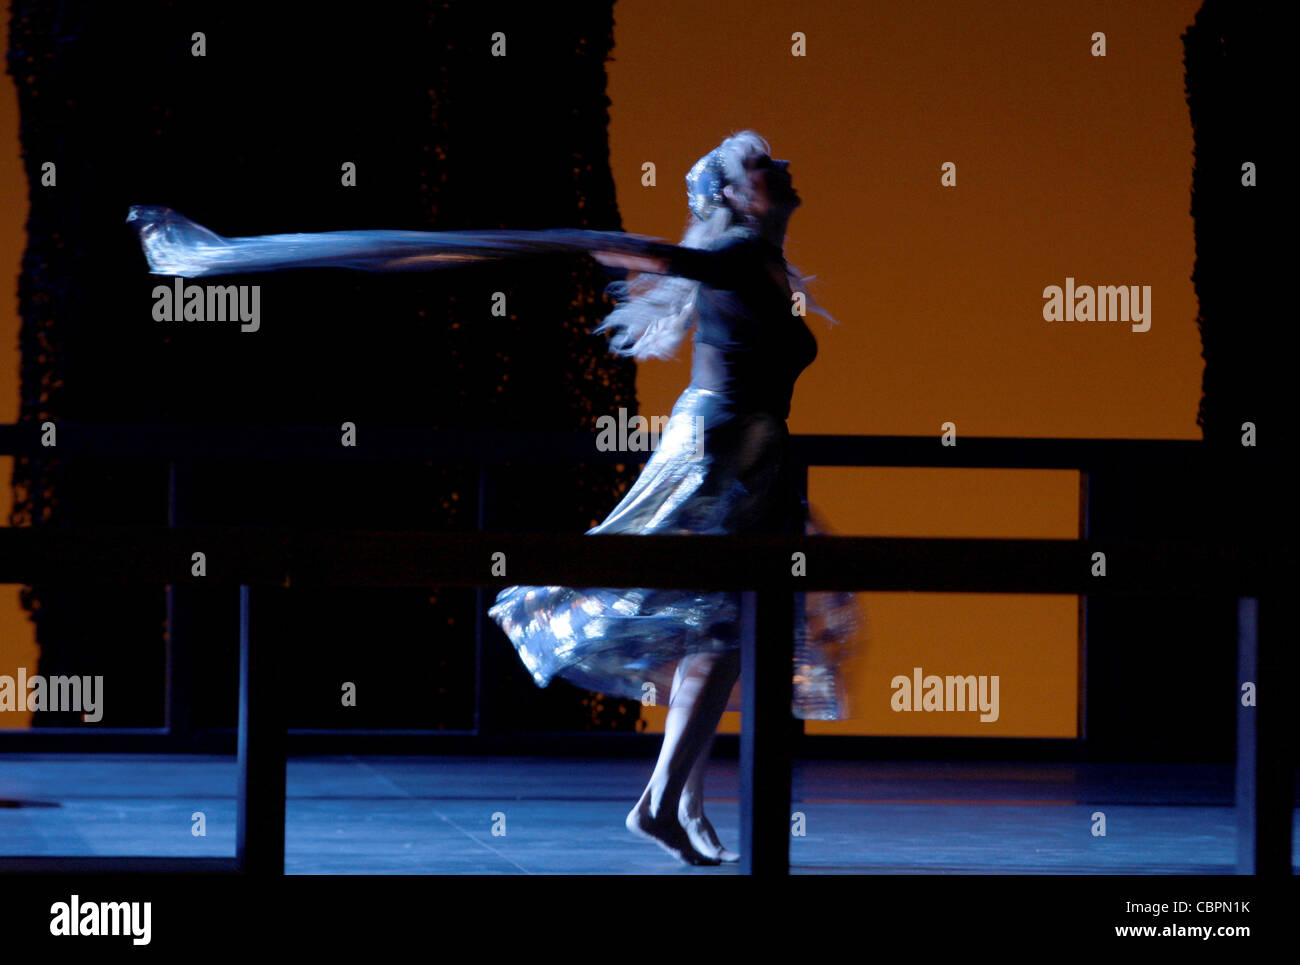 Salomé, Salomé - Drame lyrique en 1 acte- musique de Richard Strauss, de l'Oscar Wilde roman- direction musicale : Alain ALTINO Banque D'Images